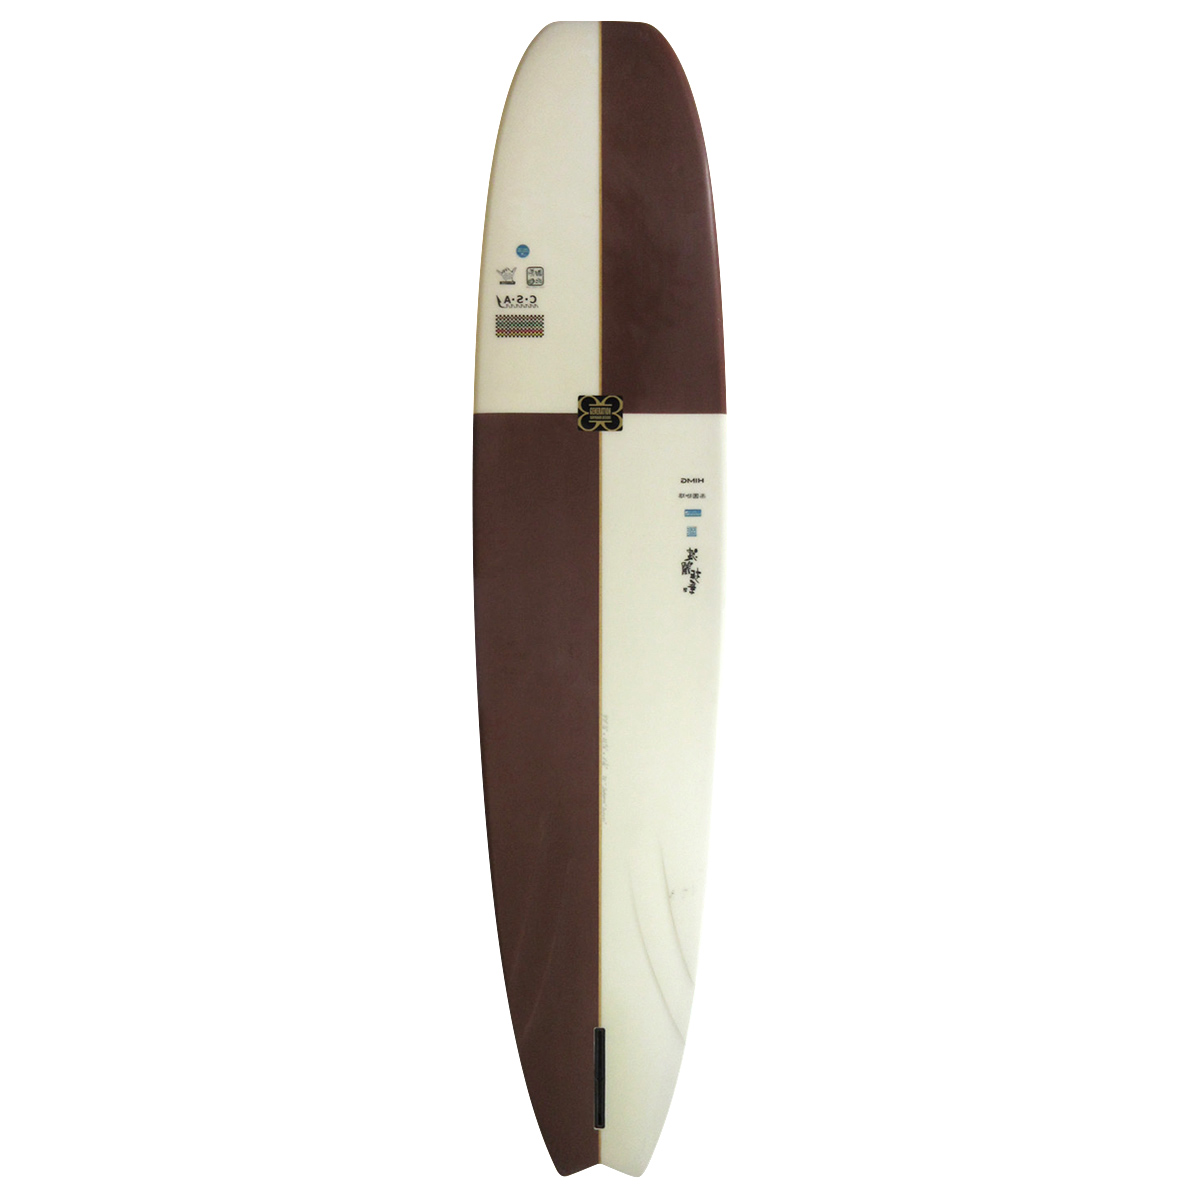 GENERATION SURFBOARDS / Custom Noserider